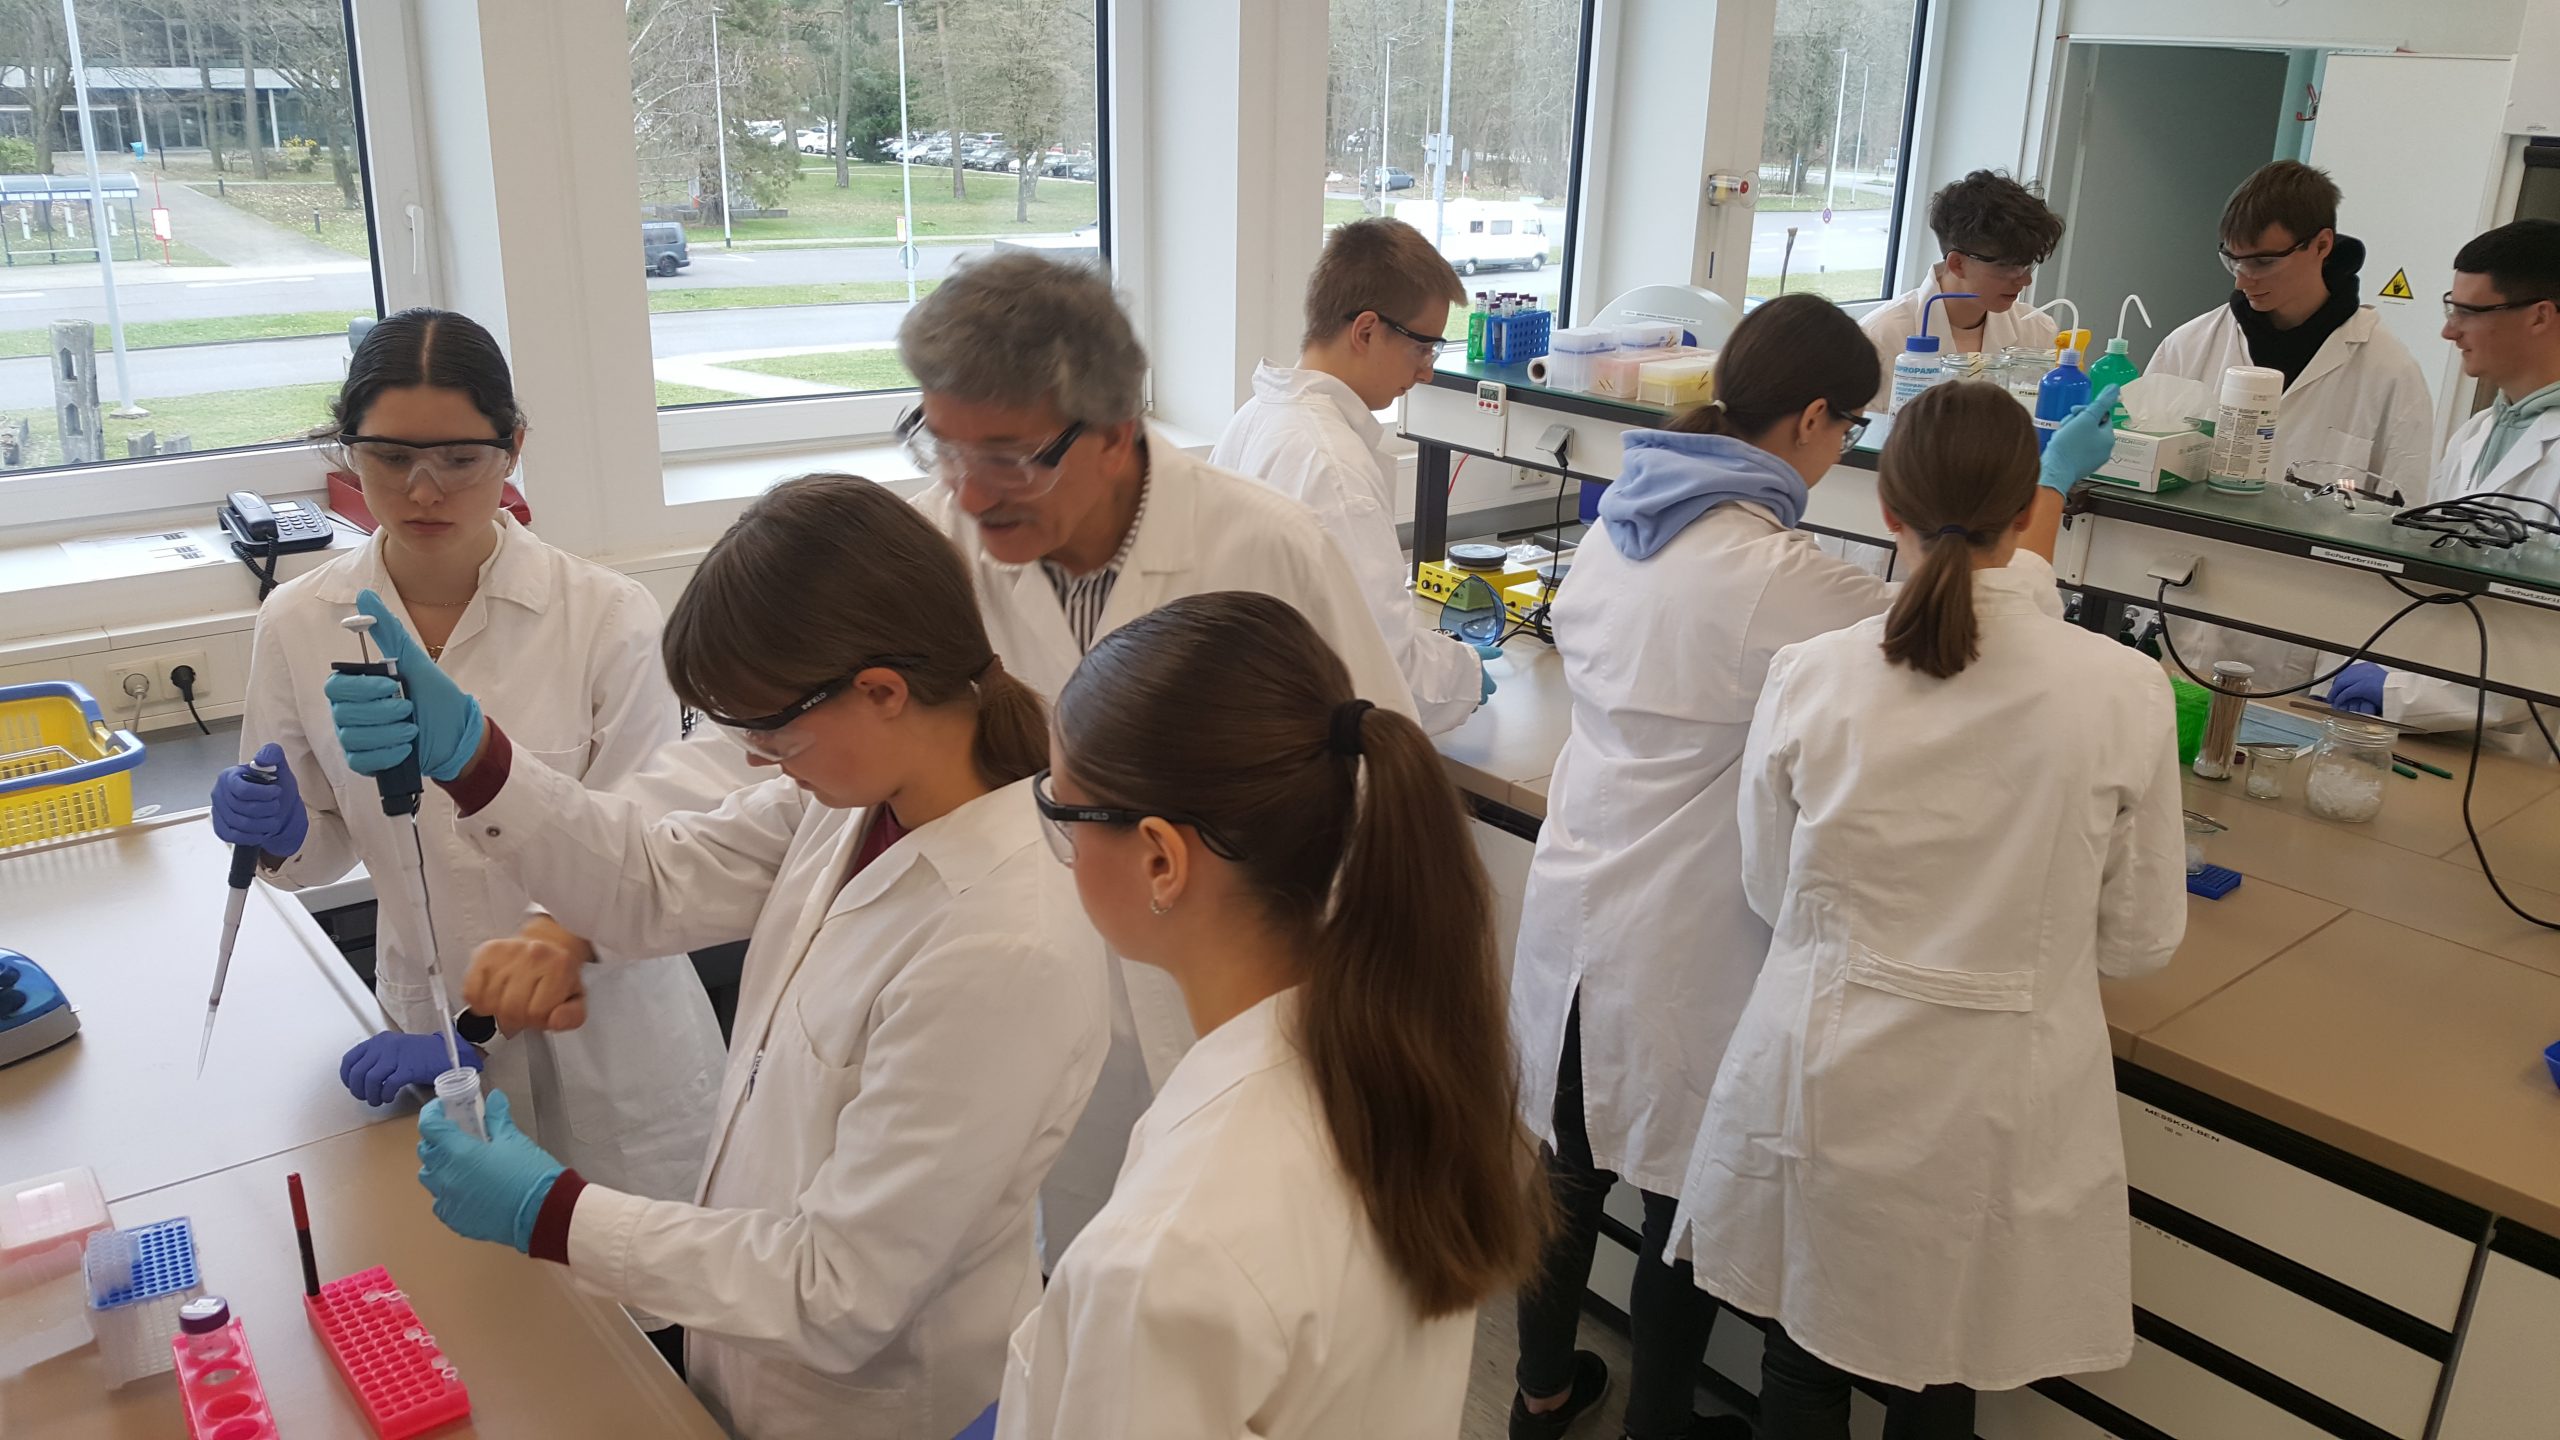 Auf diesem Bild sind Schülerinnen und Schüler in weißen Kitteln zu sehen, die im Labor arbeiten.